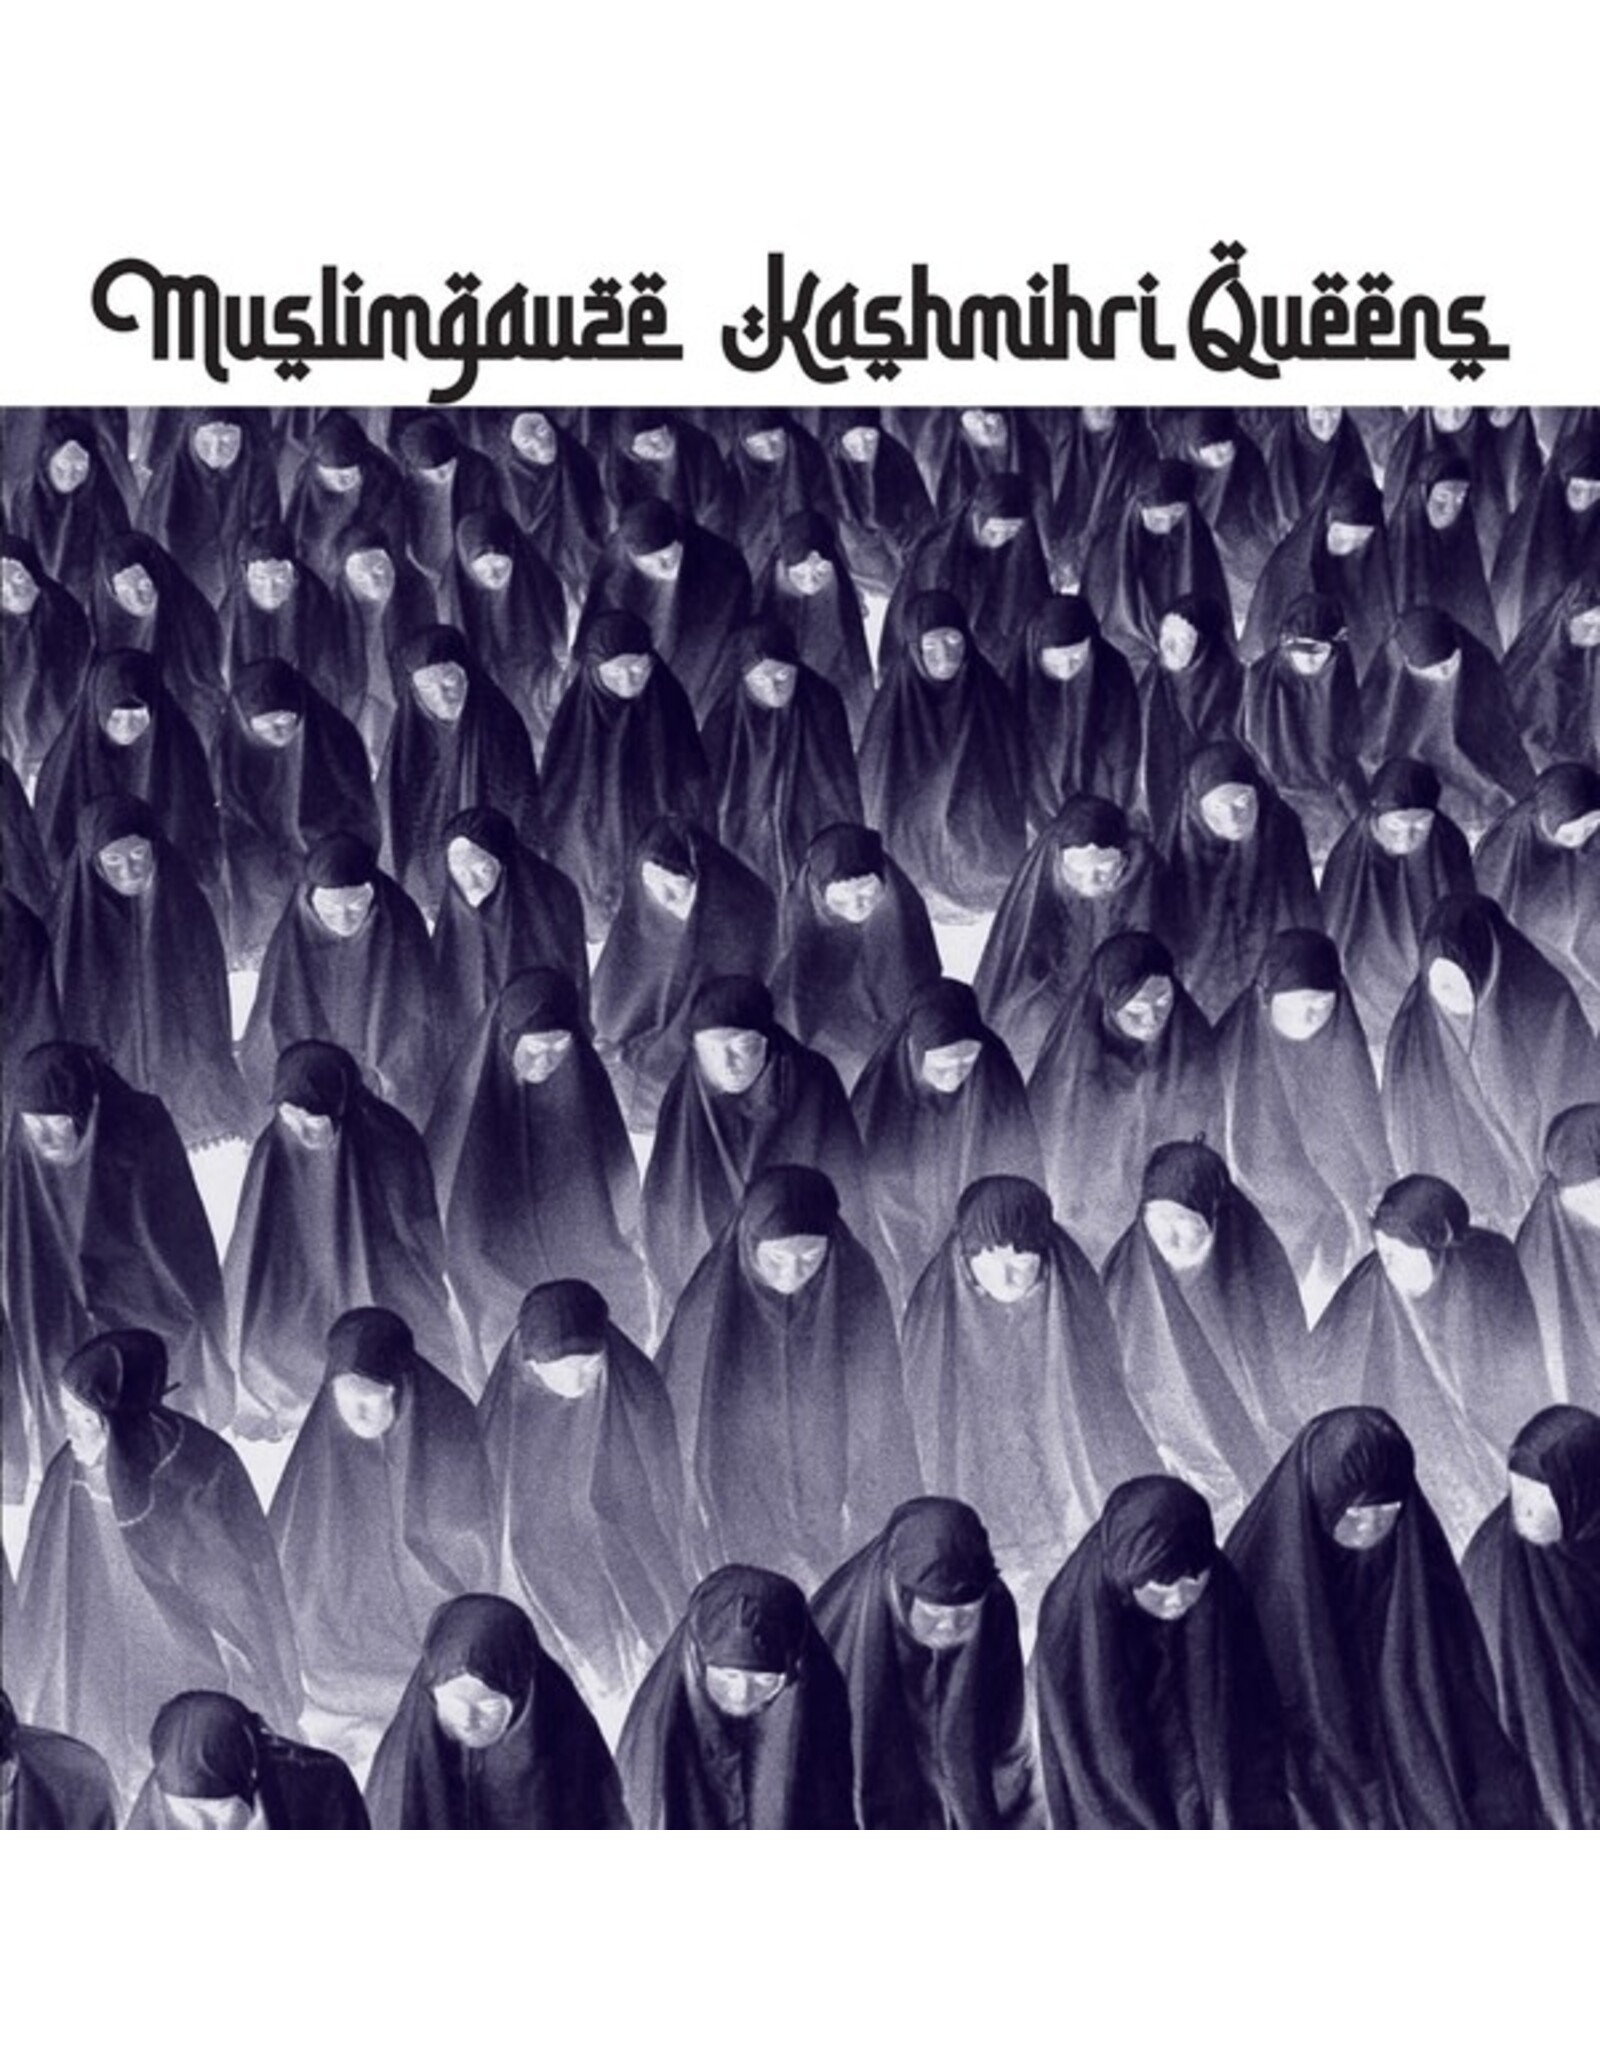 Staalplaat Muslimgauze: Kashmiri Queens LP